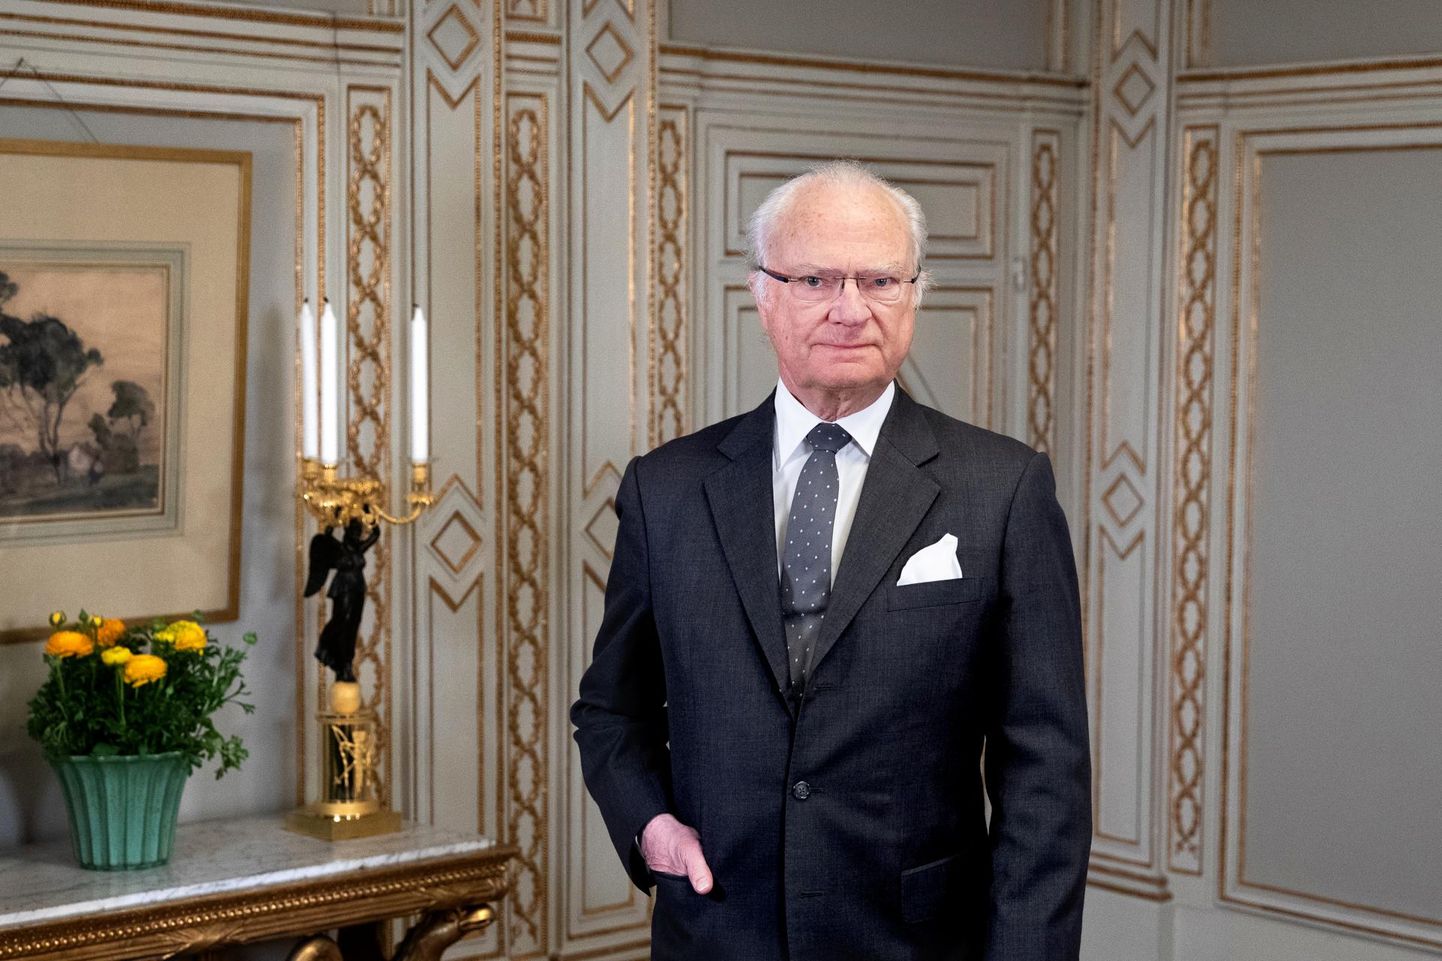 75. sünnipäeva puhul avaldas Rootsi kuningakoda kuningas Carl XVI Gustafist värske paraadfoto. Juubelit tähistatakse pandeemia tõttu tagasihoidlikult ning rahval muidu sünnipäevadel tavapärast võimalust kuningat tervitada sel aastal ei avane. 